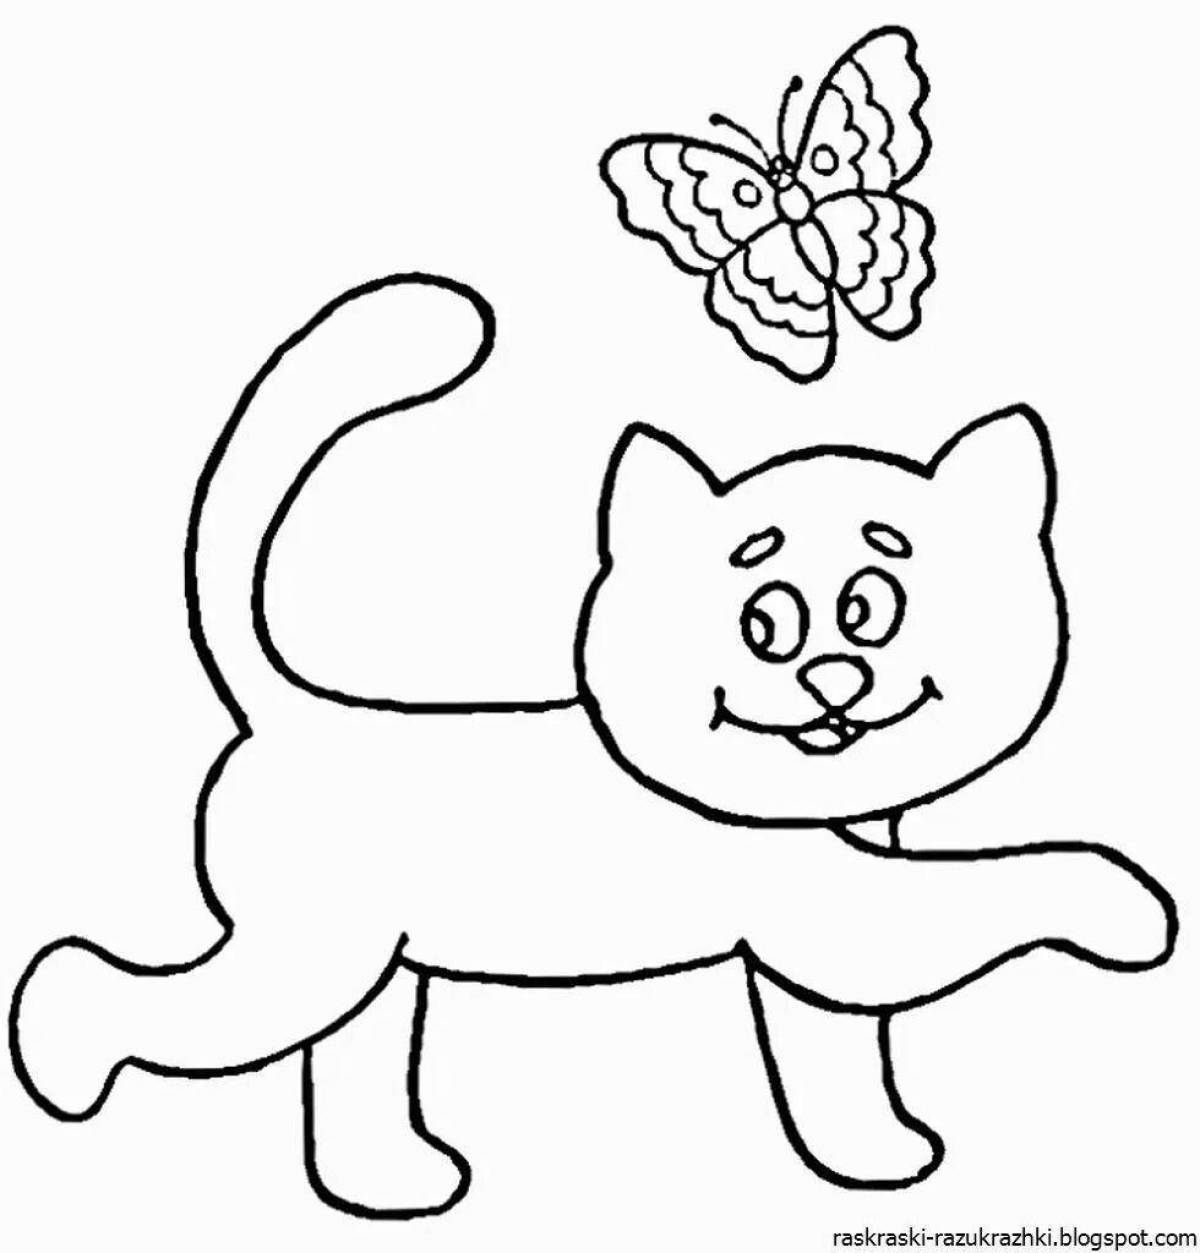 Раскраска кошки для детей 4 5 лет. Раскраски для детей. Кот раскраска для детей. Кошка раскраска для детей. Котик раскраска для детей.